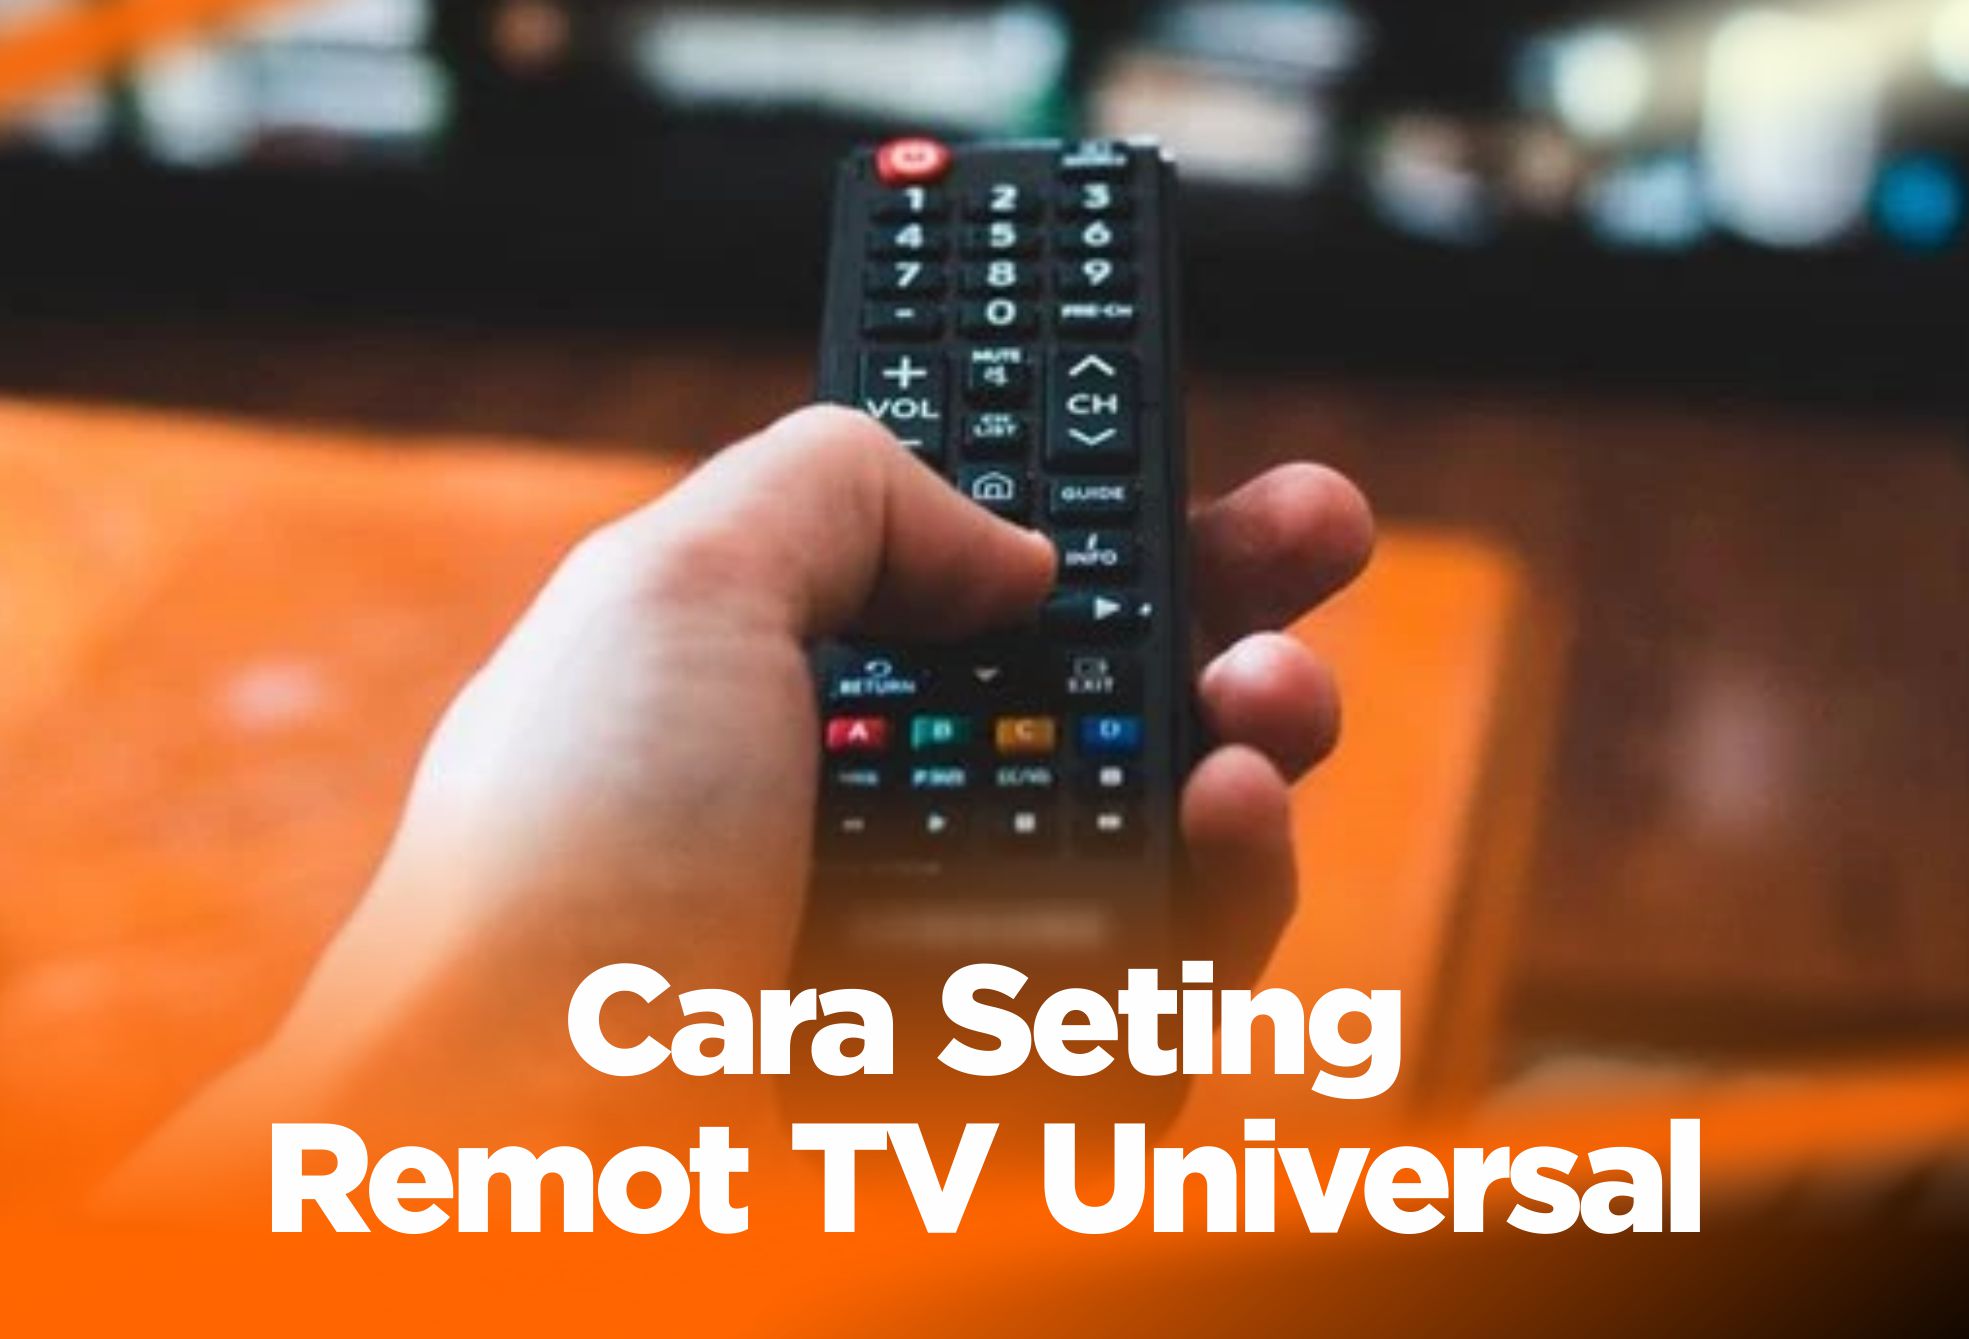 Cara Seting Remot TV Universal